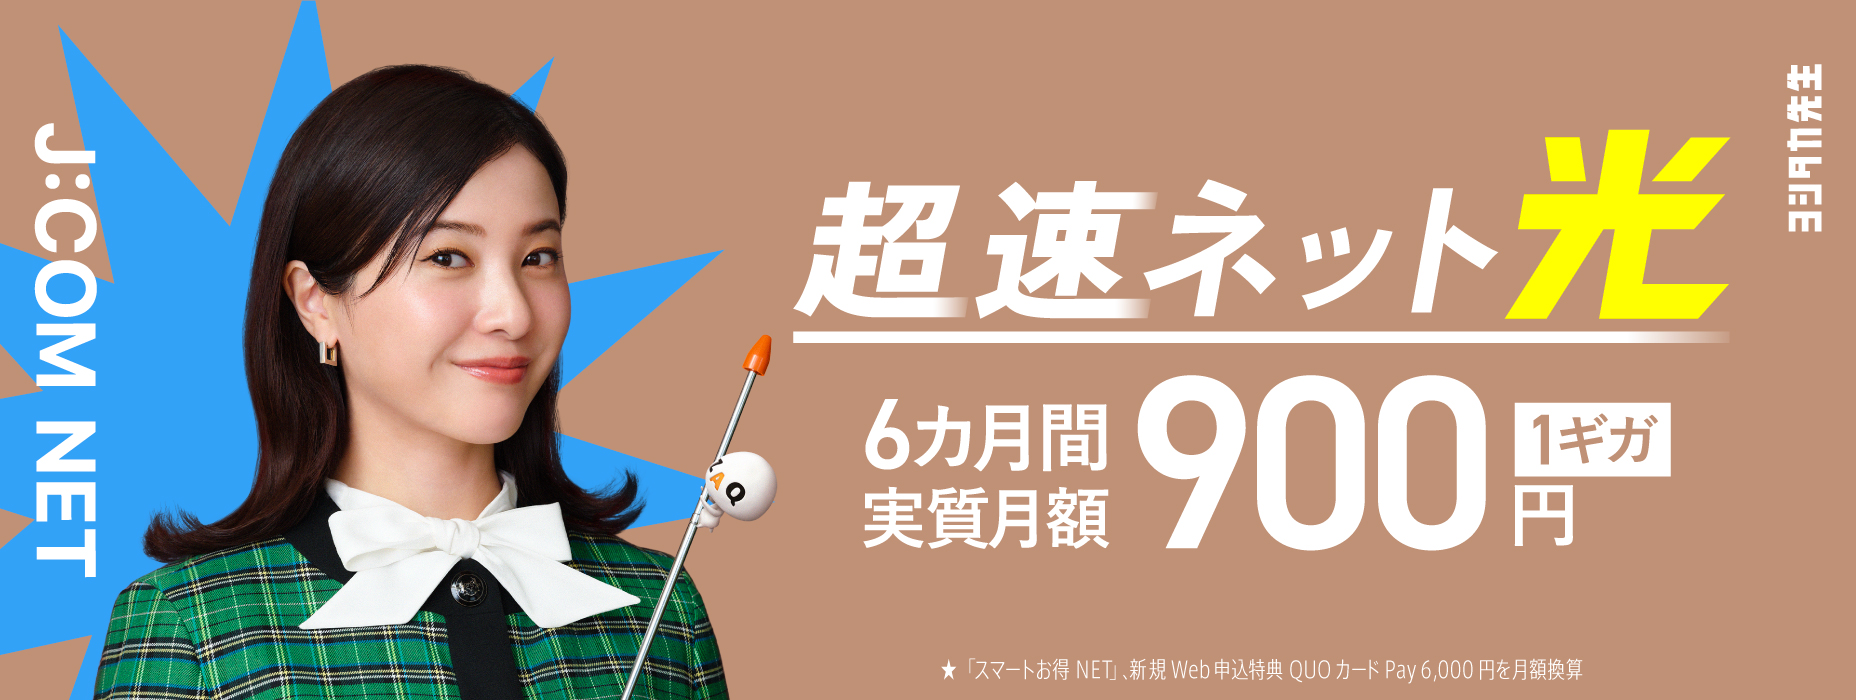 超速网下一代AIWi-Fi6个月实际每月900日元 (含税) 〜★“智能折扣NET”，新的网络申请优惠QUO卡Pay每月6,000日元转换